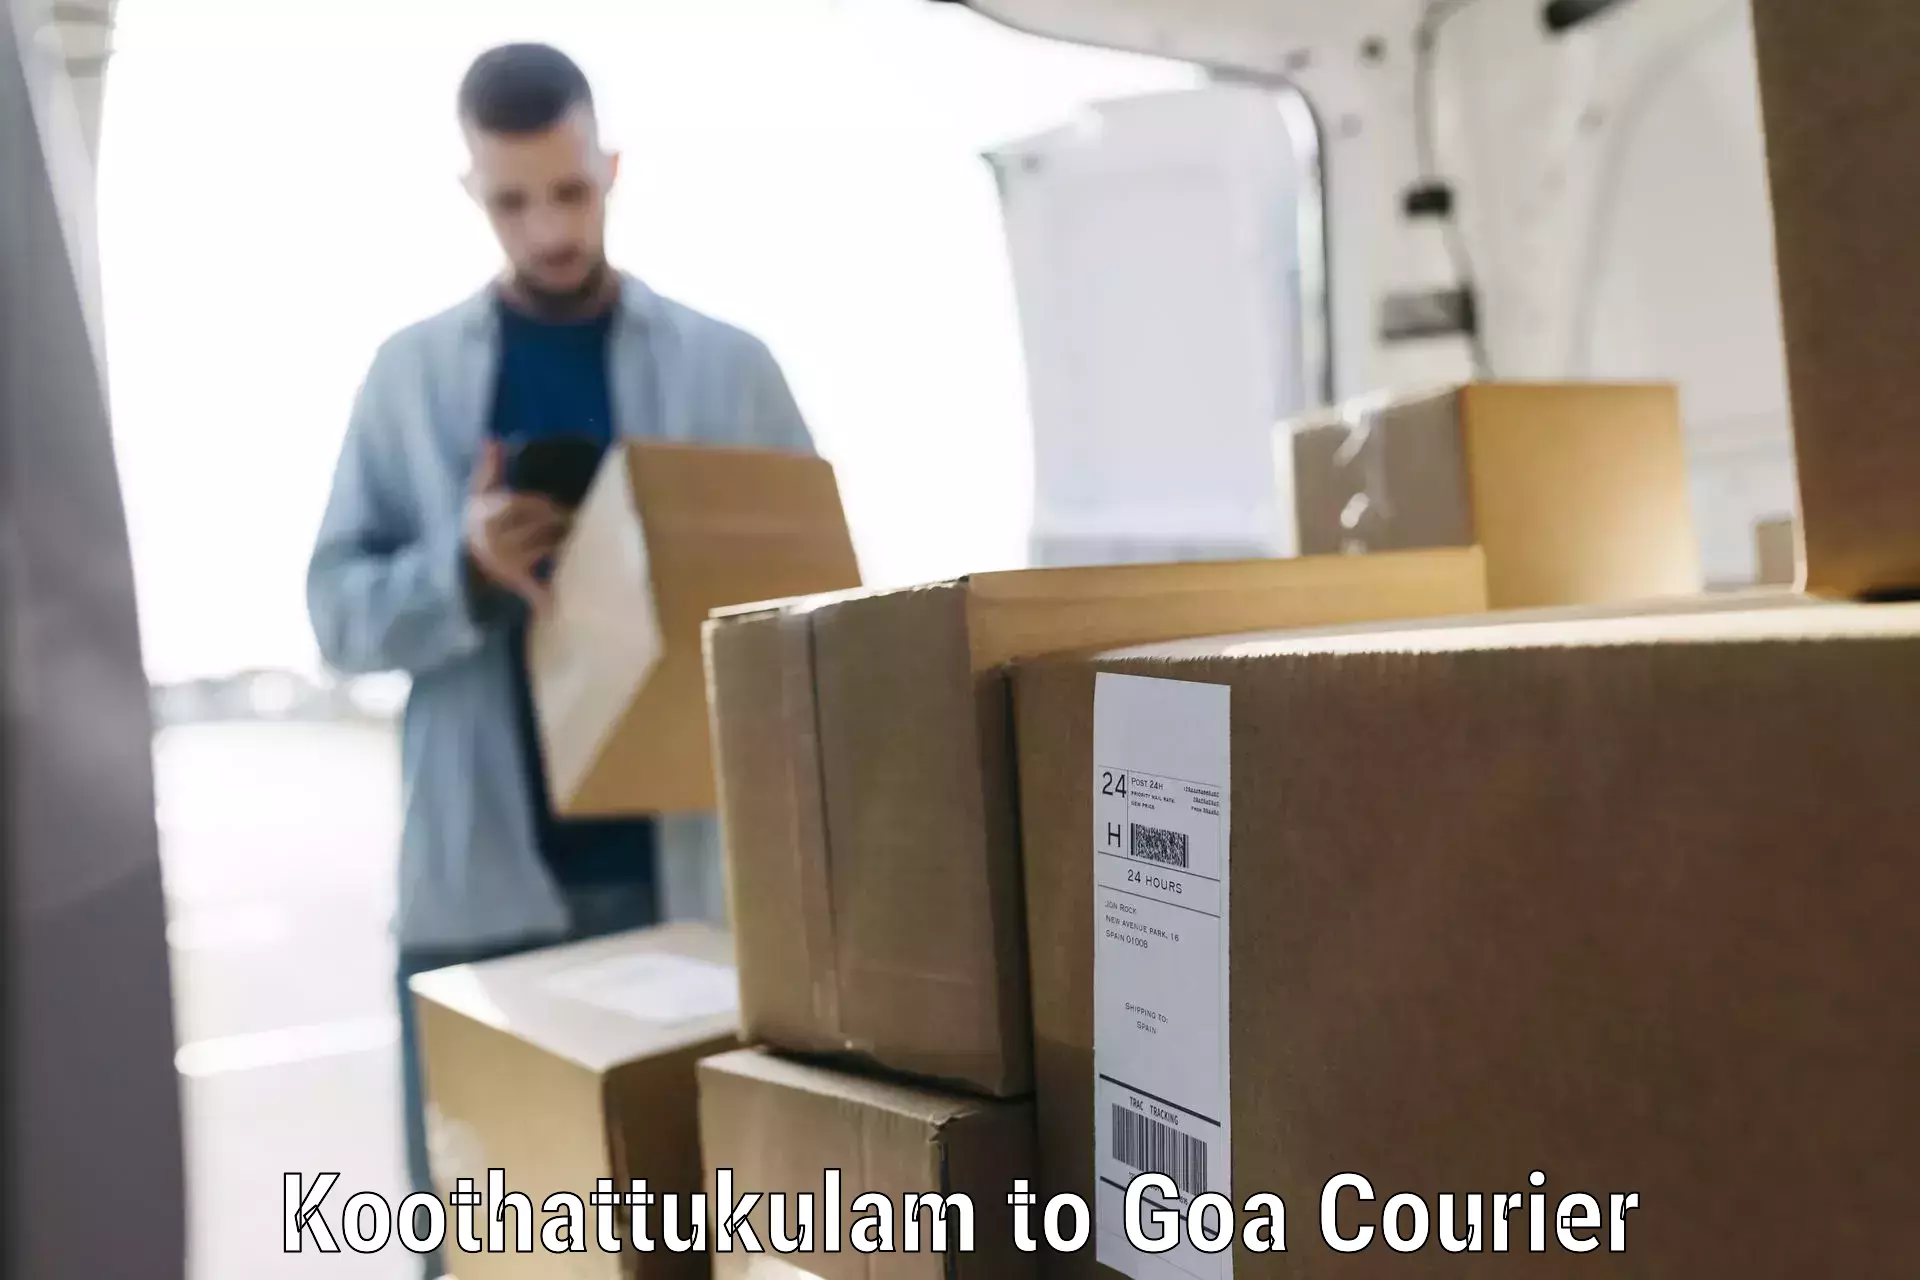 Luggage delivery app Koothattukulam to Goa